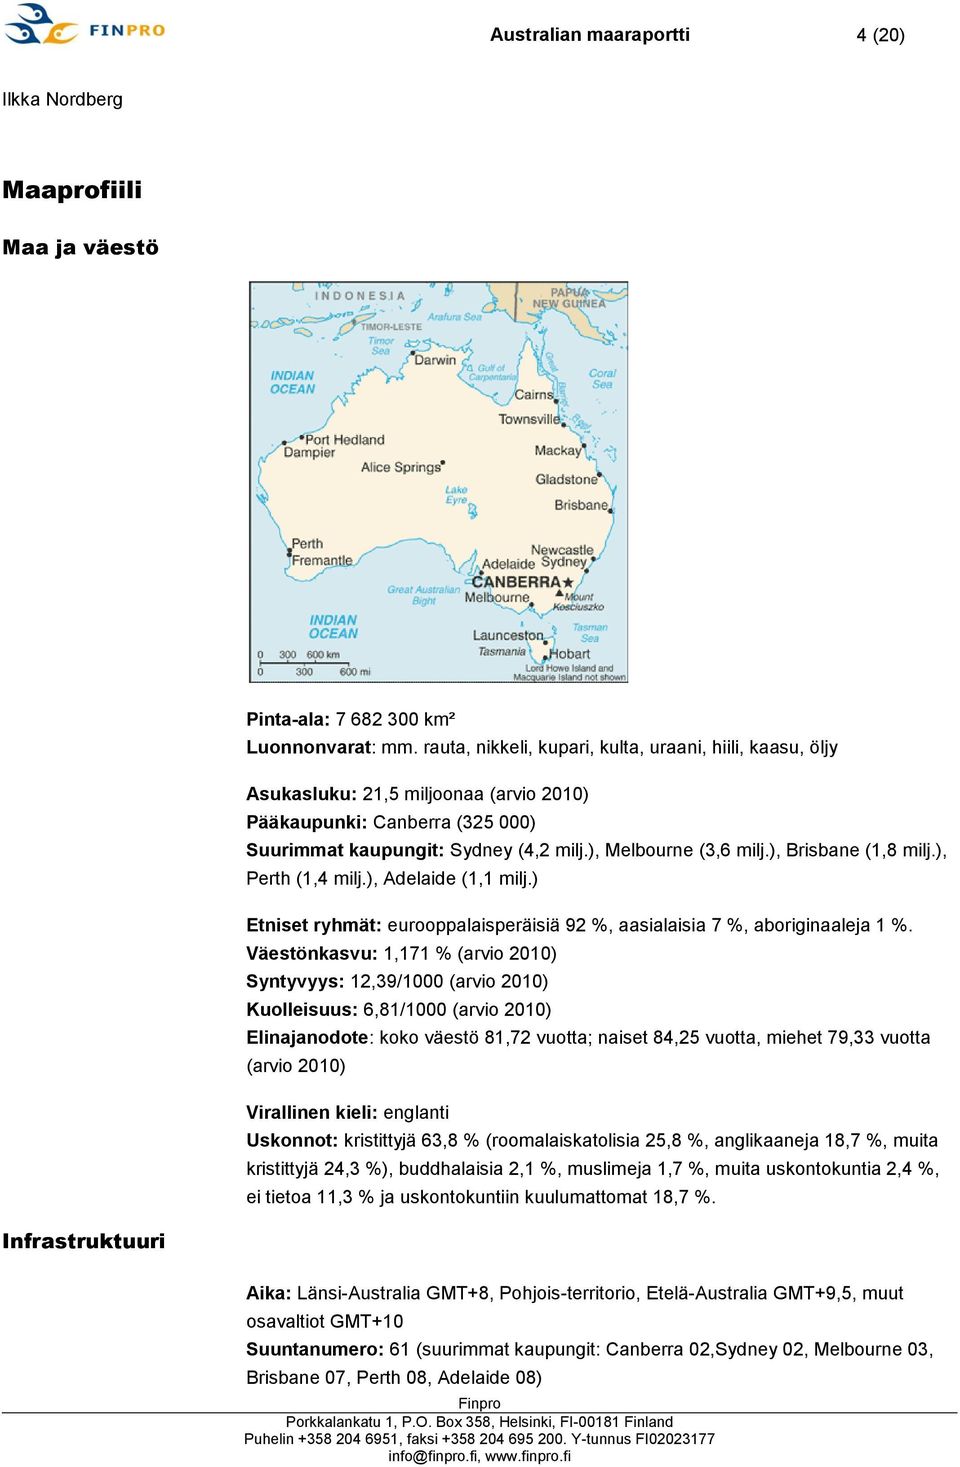 ), Brisbane (1,8 milj.), Perth (1,4 milj.), Adelaide (1,1 milj.) Etniset ryhmät: eurooppalaisperäisiä 92 %, aasialaisia 7 %, aboriginaaleja 1 %.